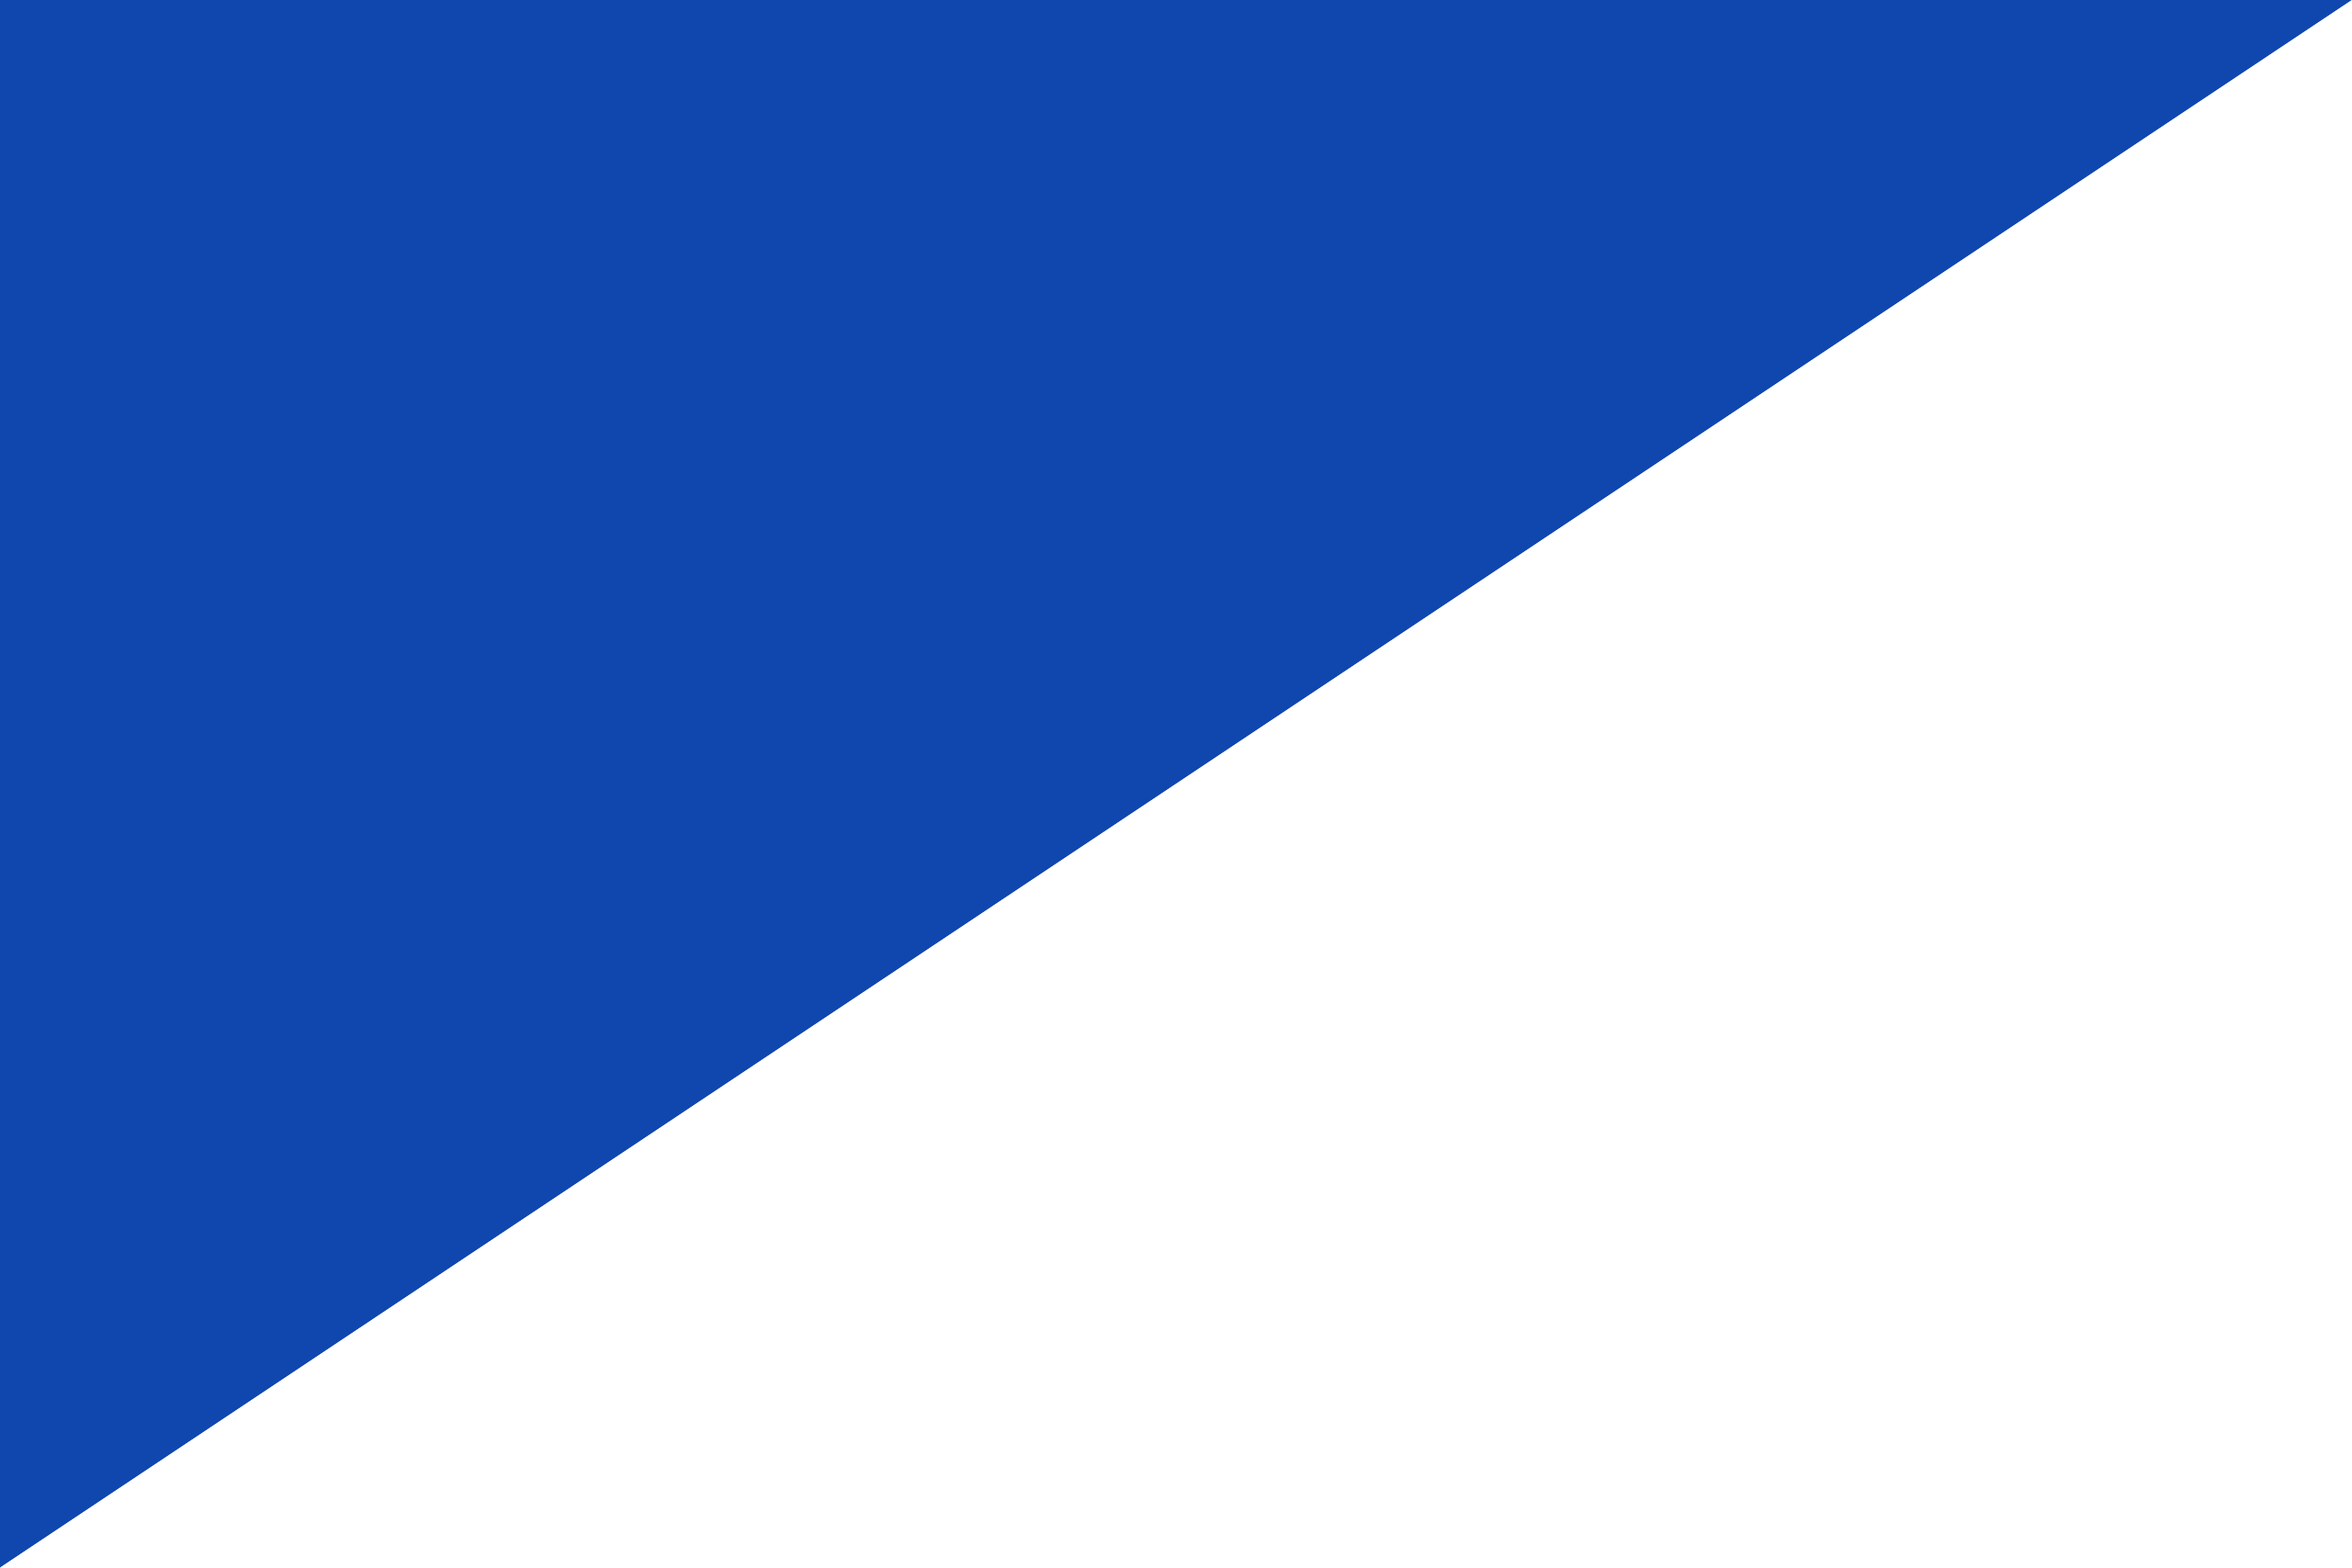 Cuál es la bandera de finlandia